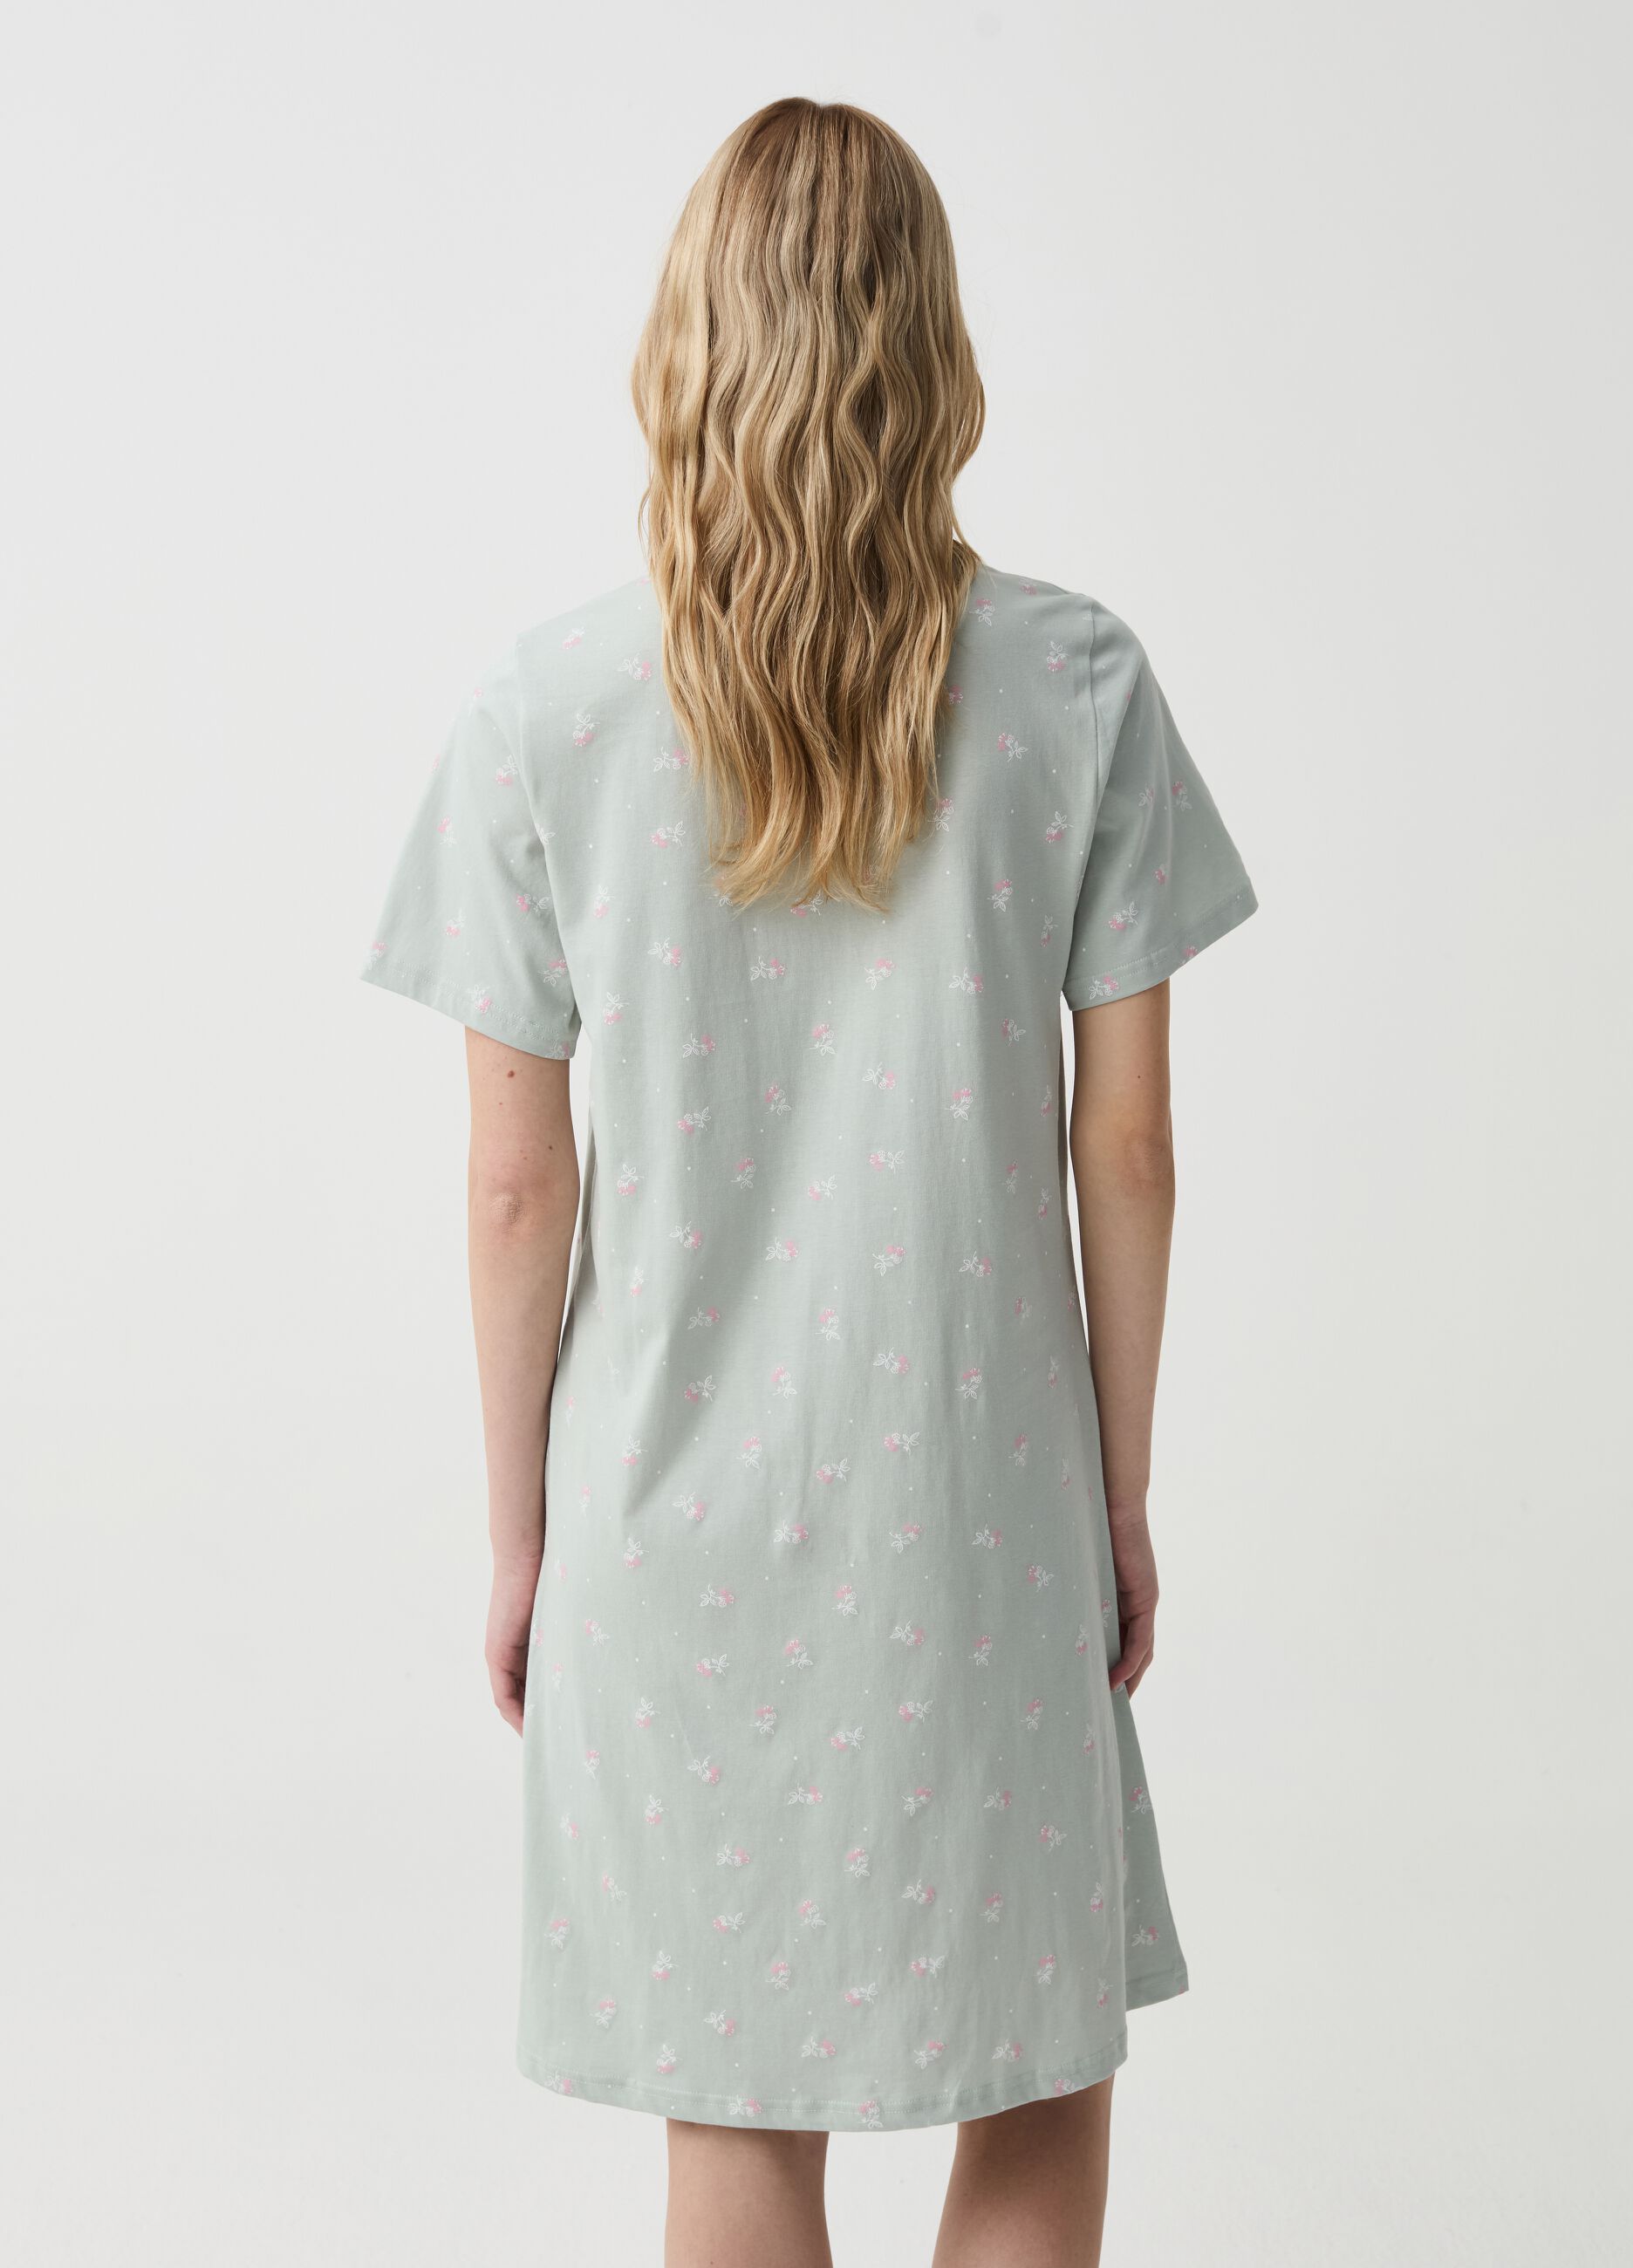 Organic cotton nightdress with pattern